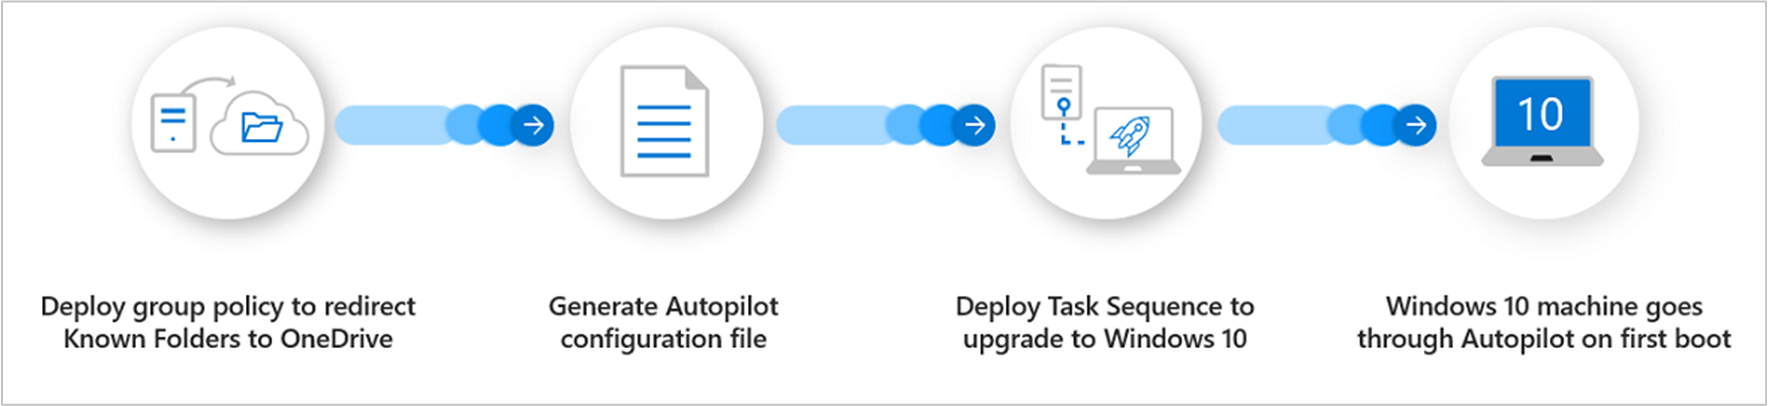 Overzicht van processen voor Windows Autopilot voor bestaande apparaten